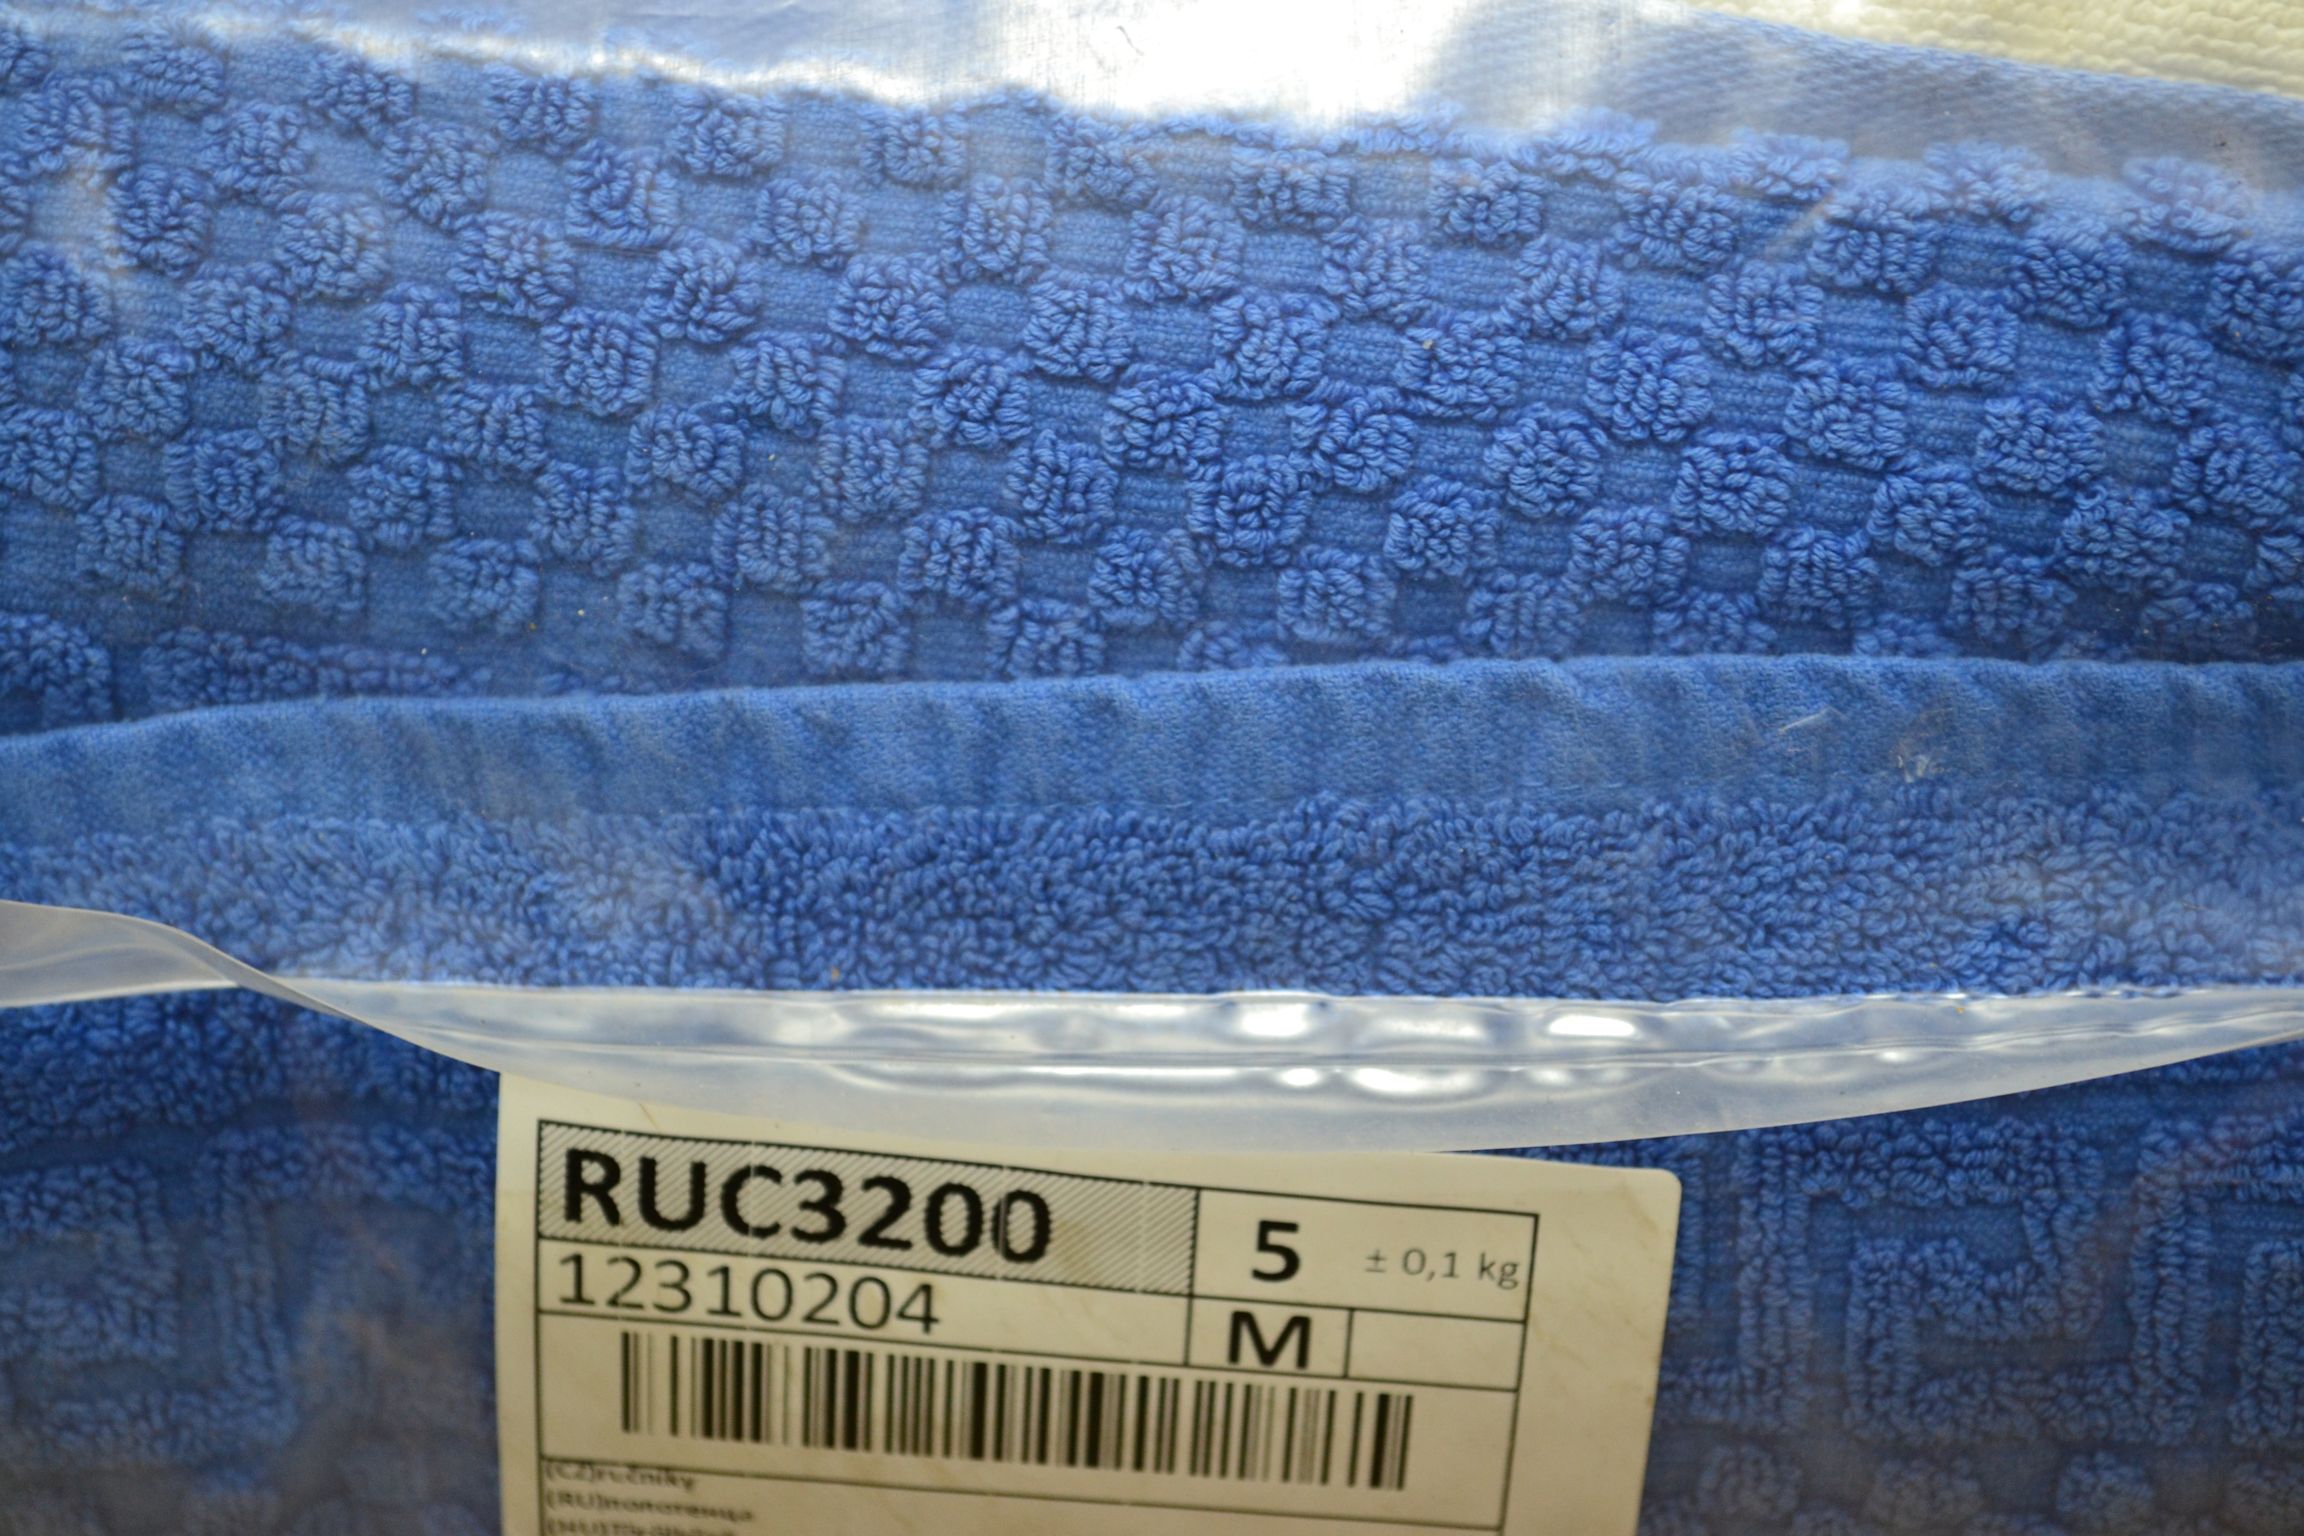 RUC3200 Полотенца; код мешка 12310204